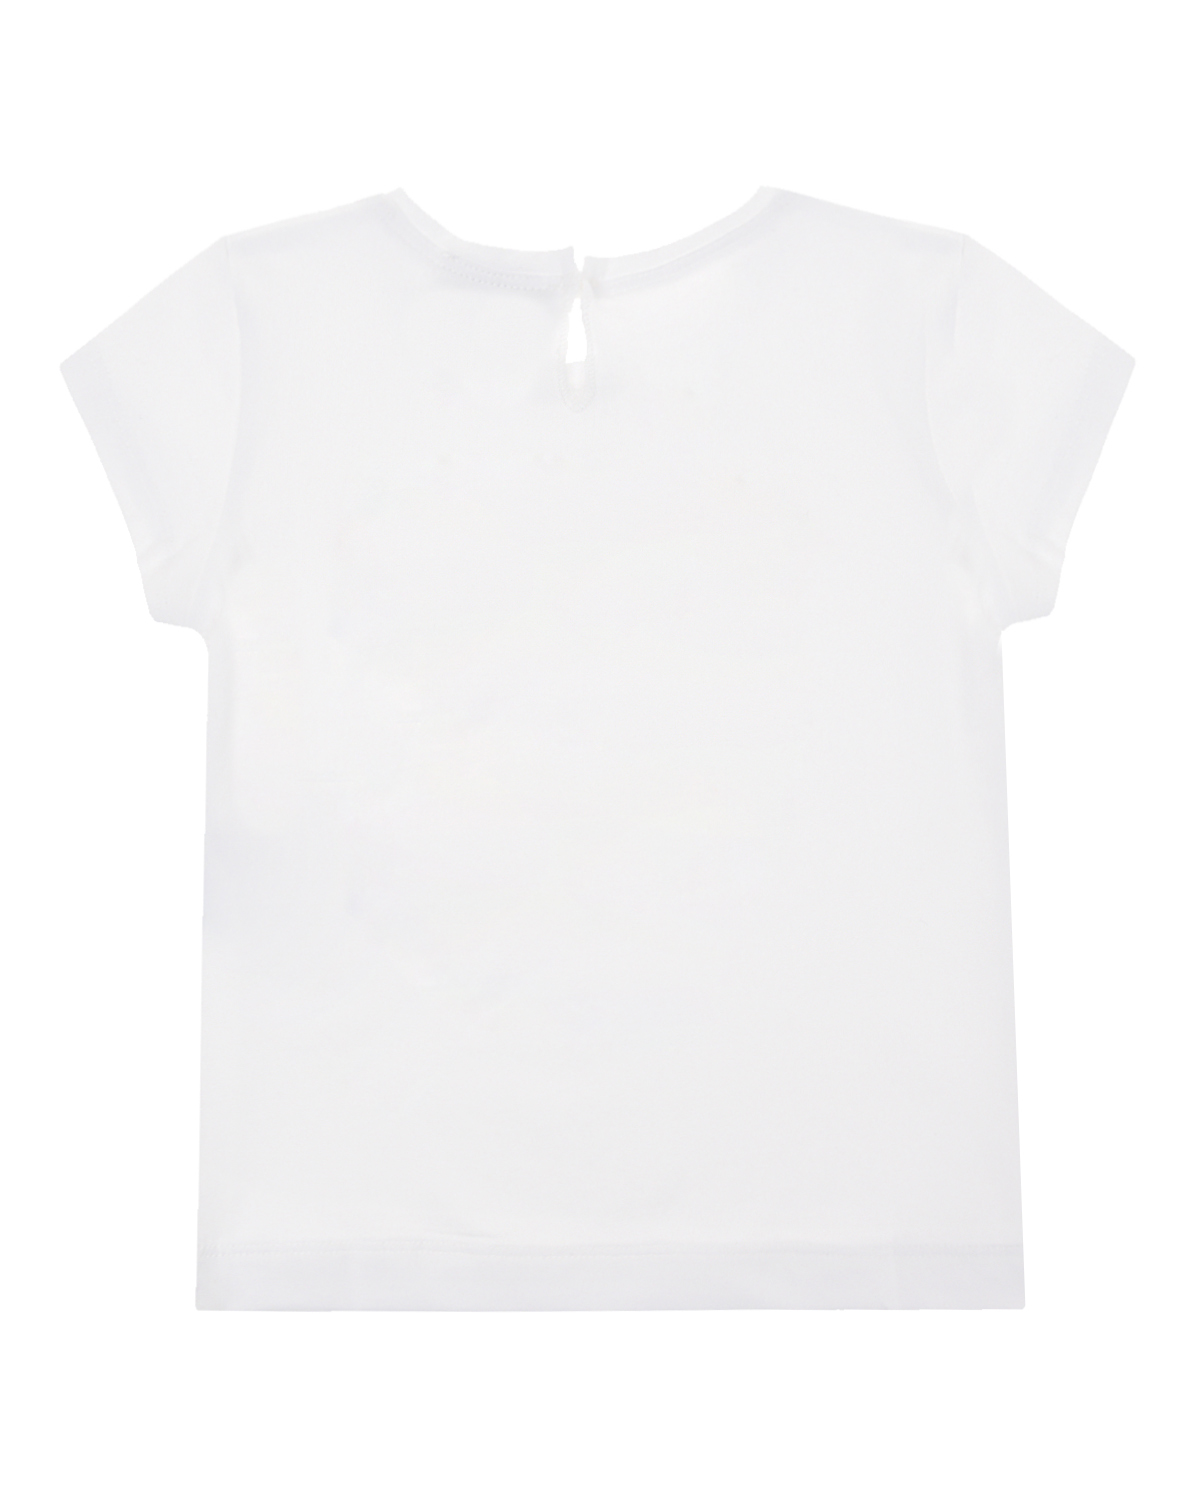 Белая футболка с принтом "три девочки" Monnalisa, размер 86, цвет белый - фото 2